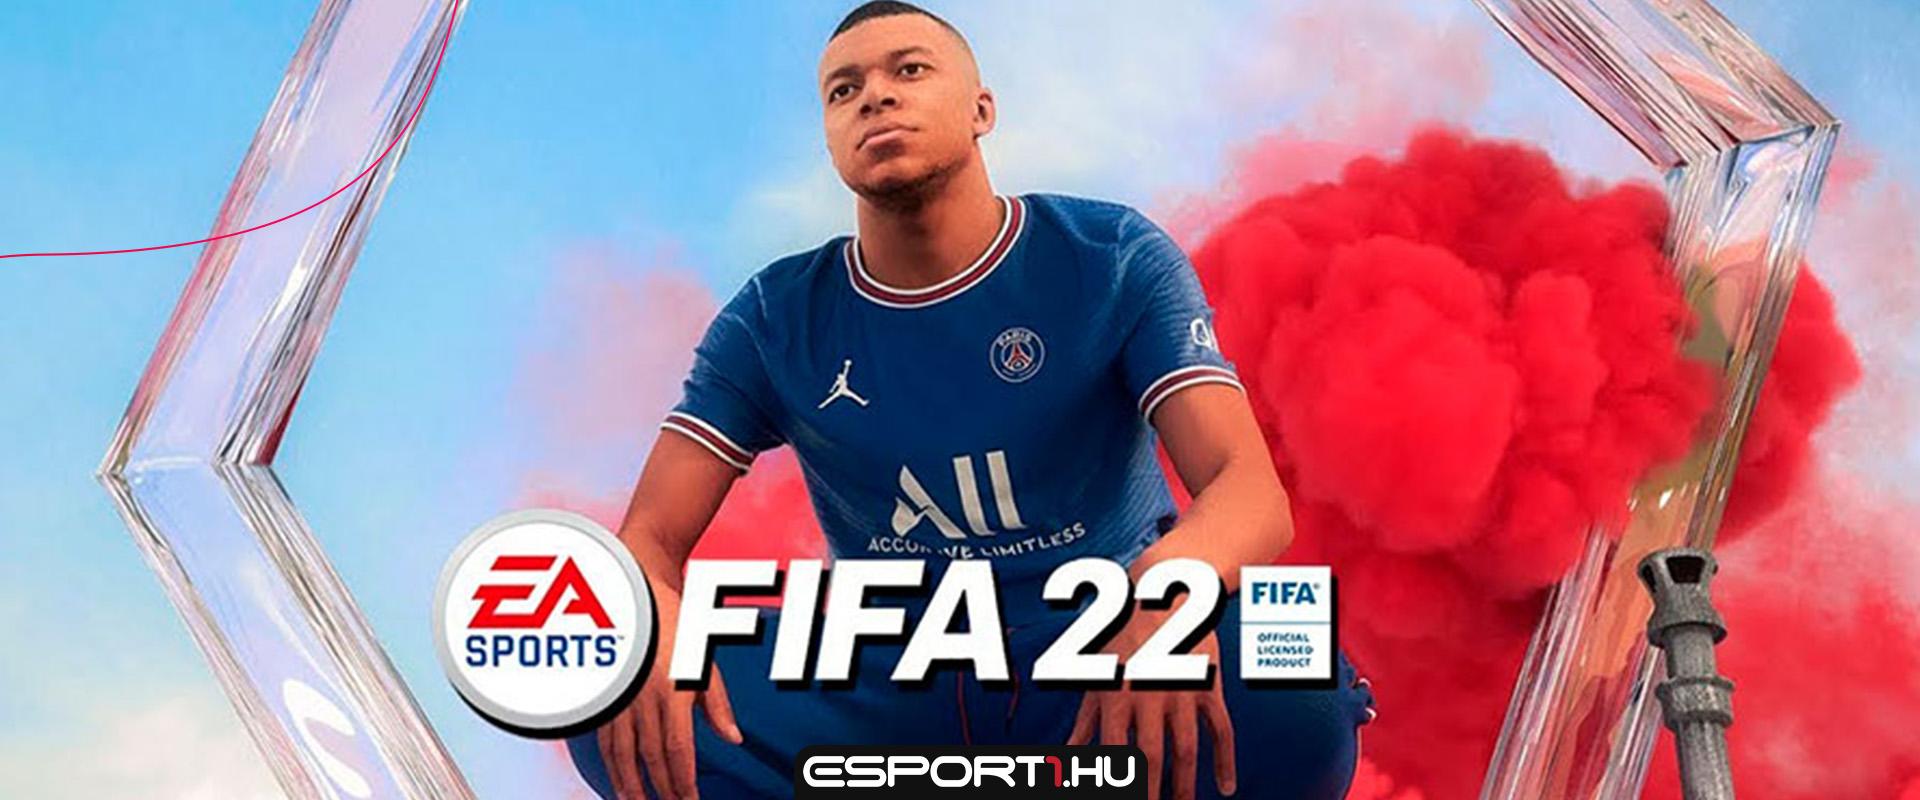 Bocsánatkérés közepette korrigálta a PCs FIFA 22-re vonatkozó limitációt az EA Sports